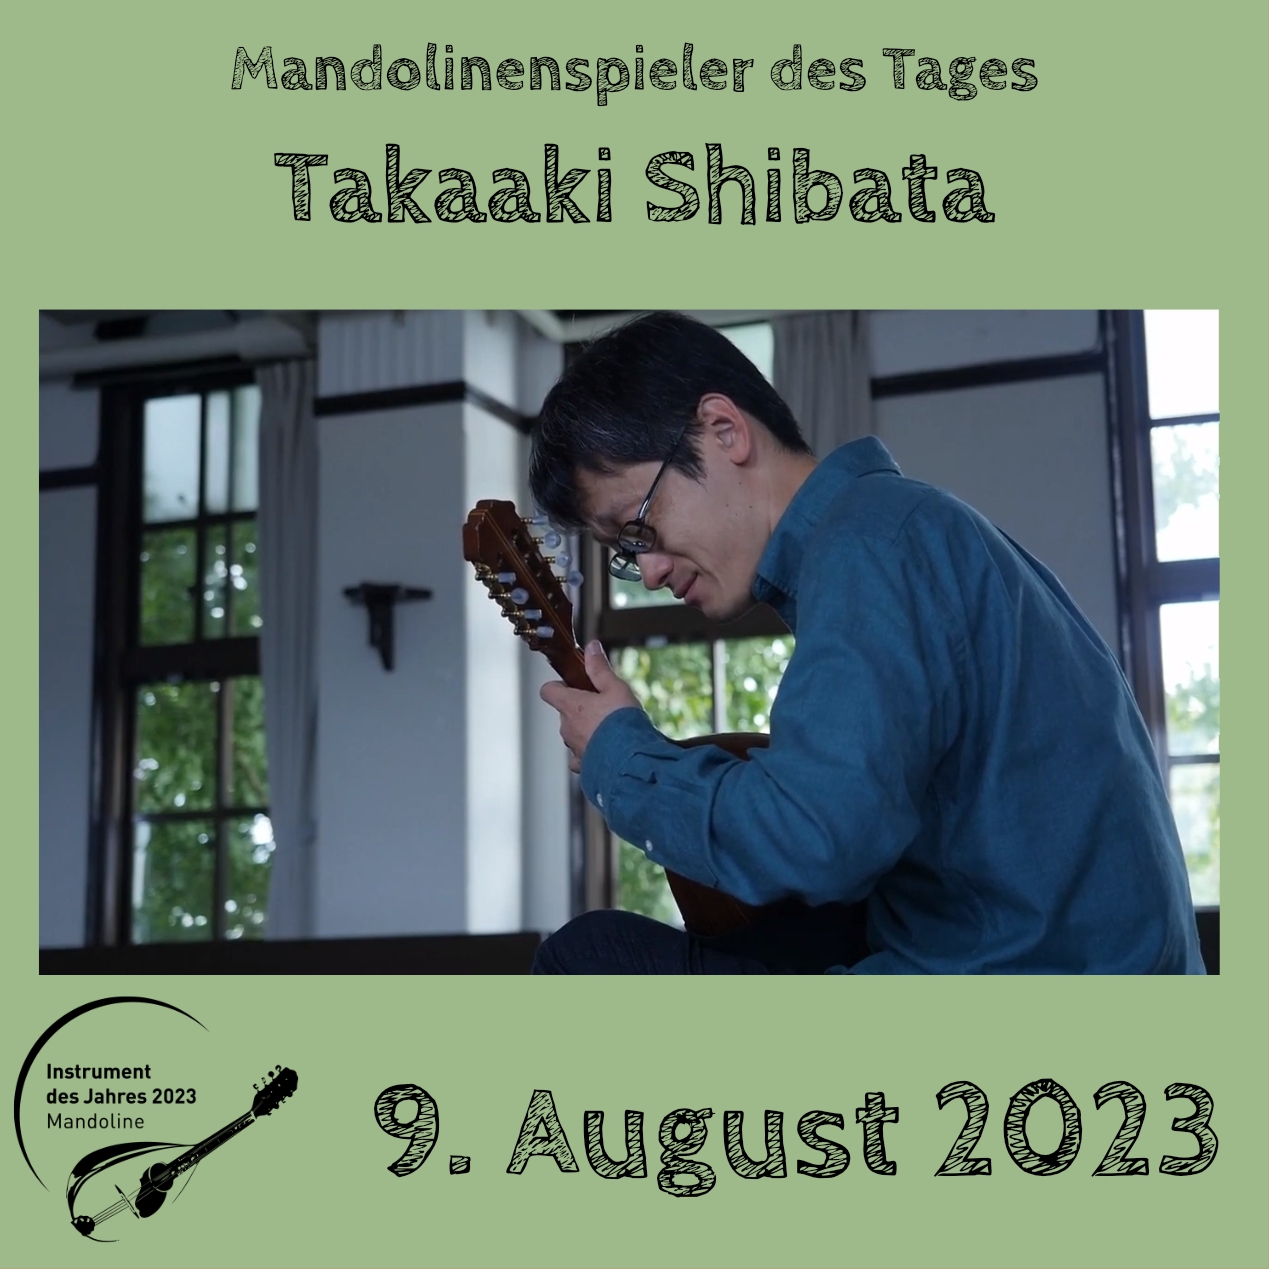 9. August  - Takaaki Shibata Mandoline Instrument des Jahres 2023 Mandolinenspieler Mandolinenspielerin des Tages